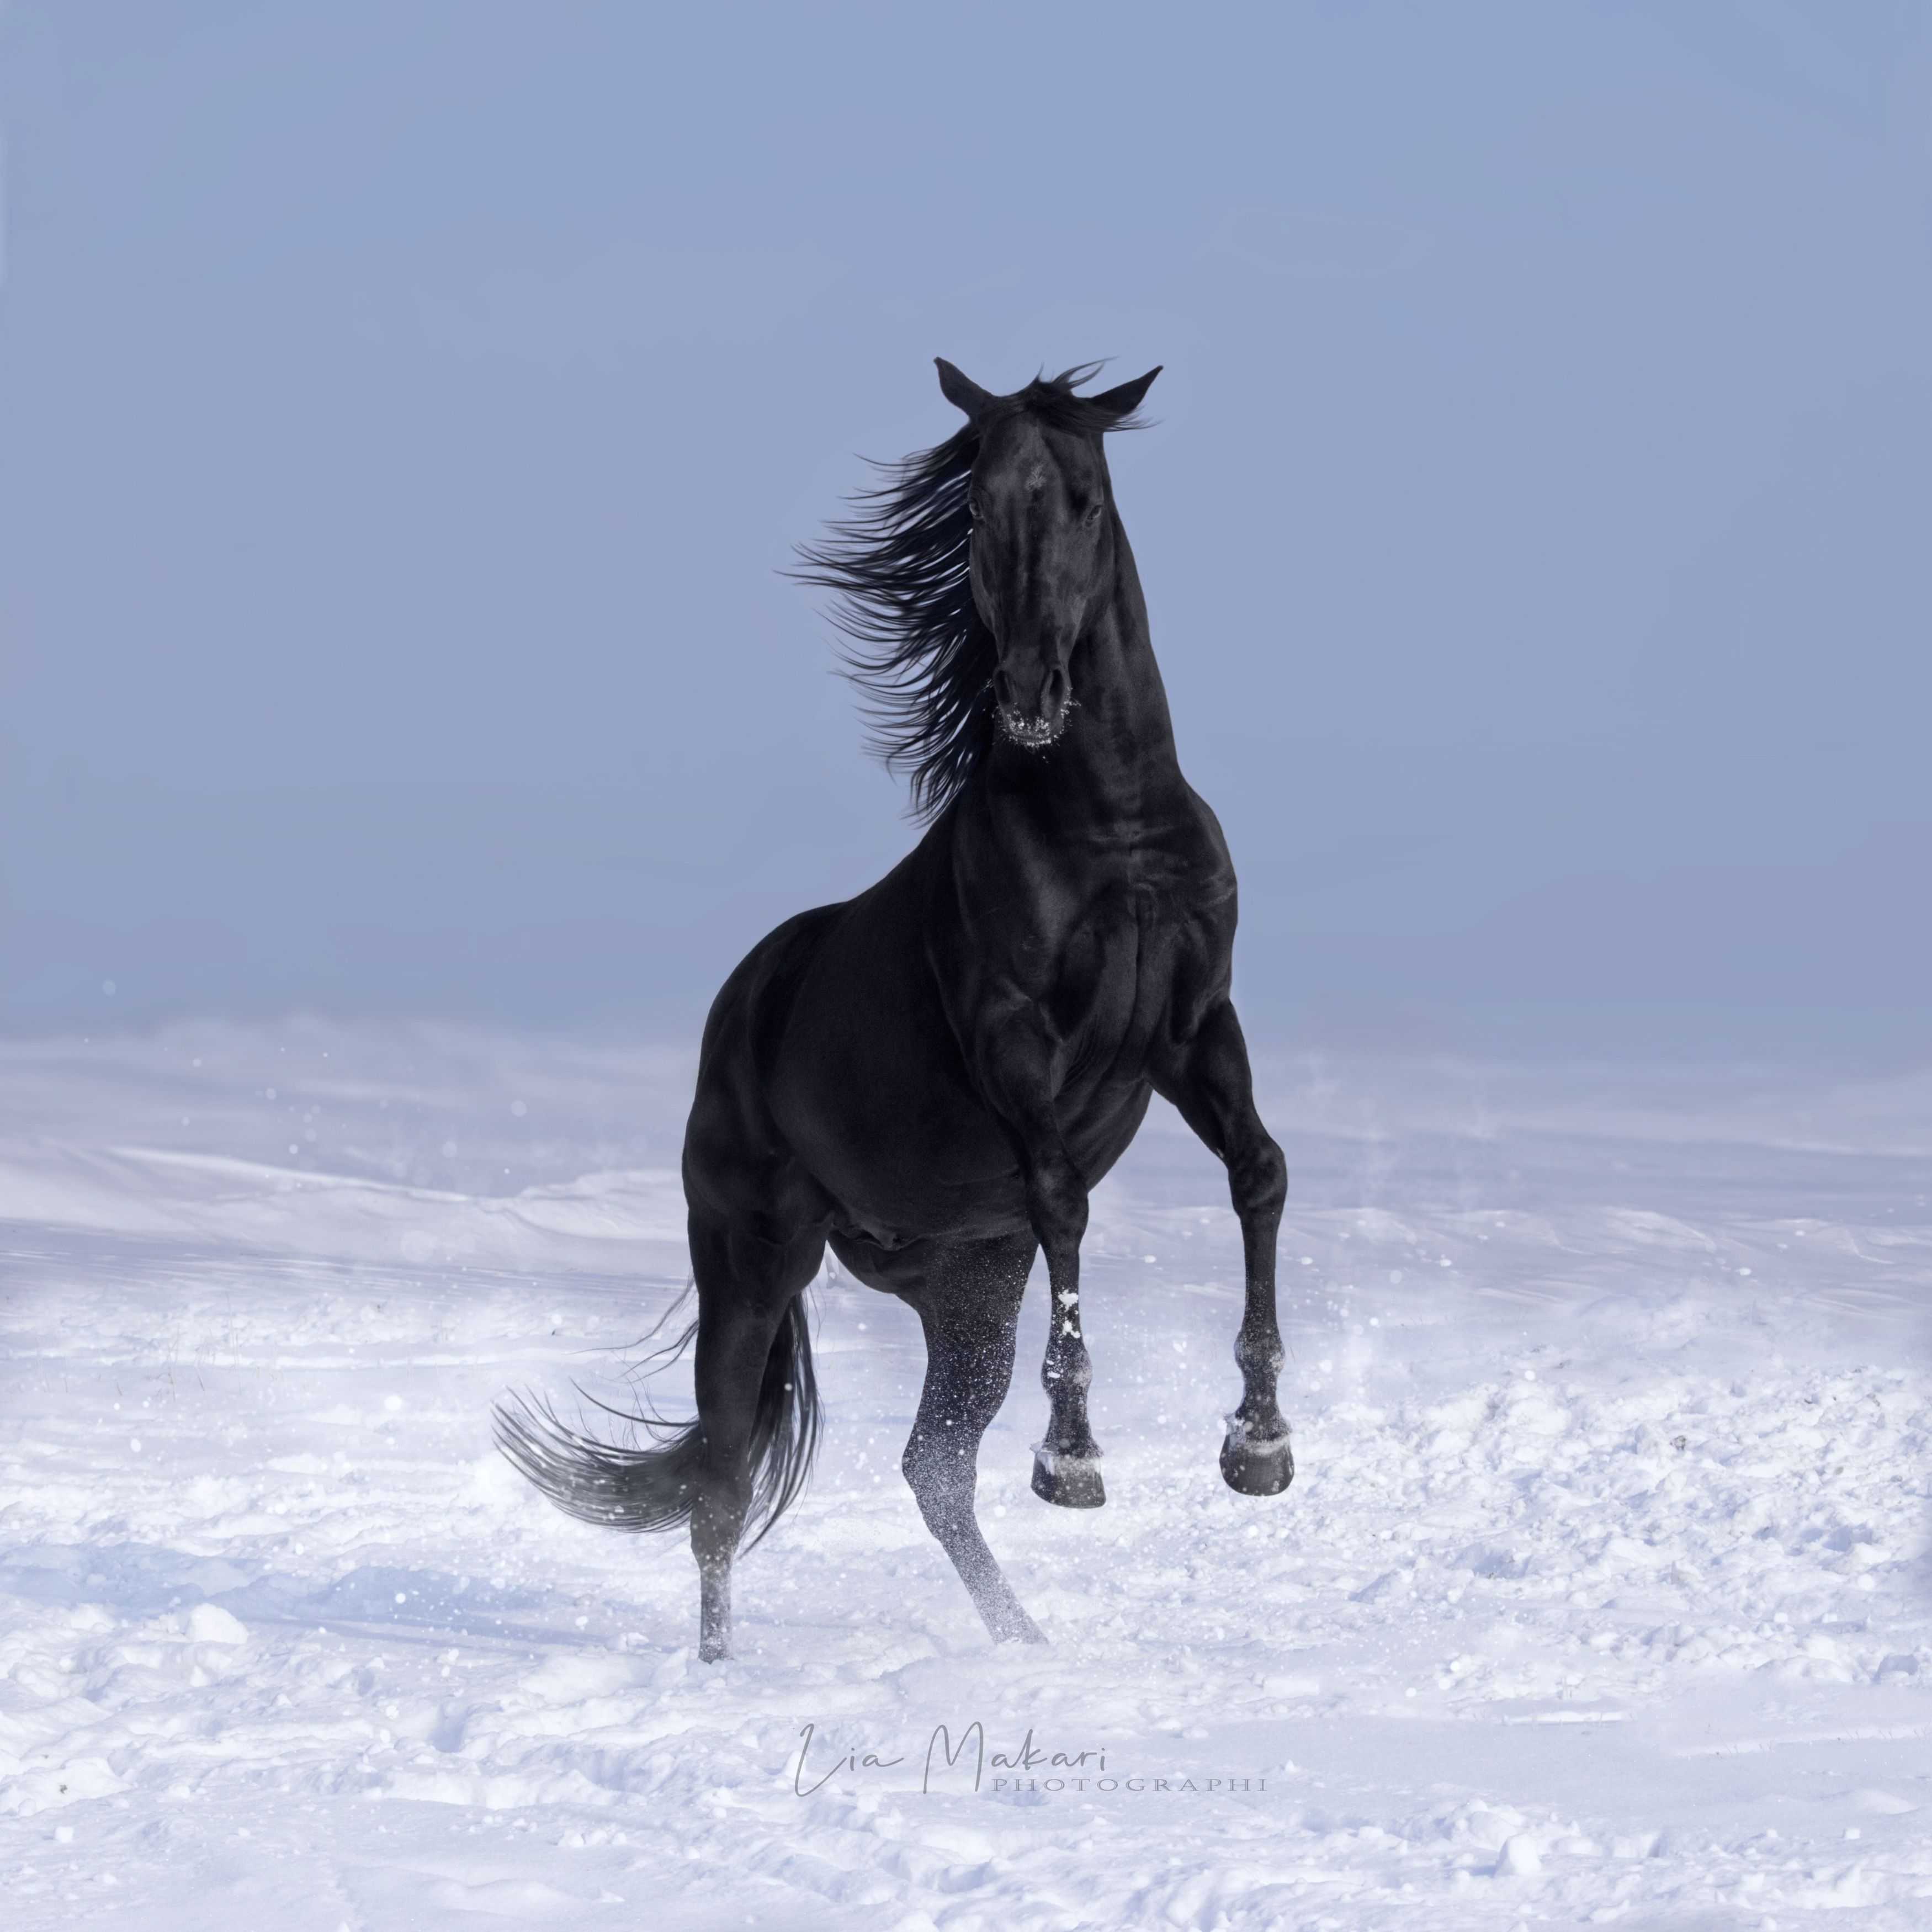 Лошадь, лошади, зима, horse, horses, winter , Макари Лия